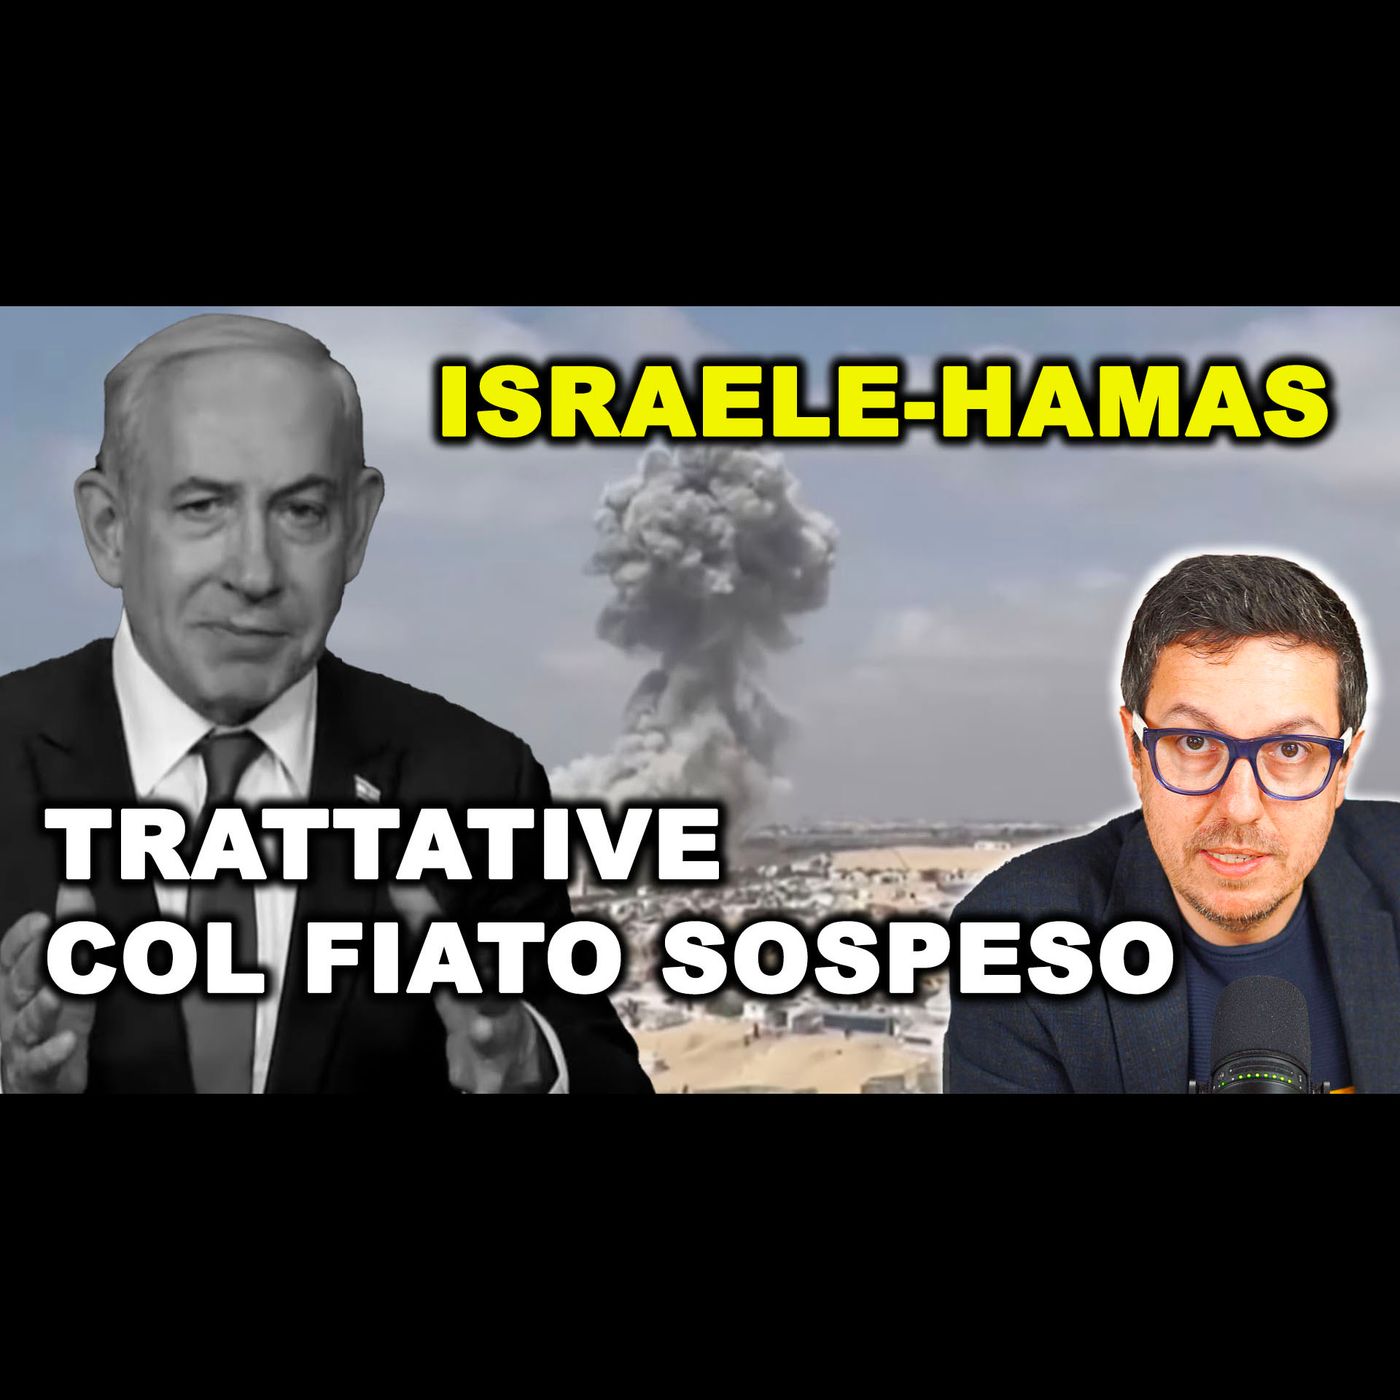 ISRAELE E HAMAS: Trattative per il CESSATE IL FUOCO col fiato sospeso